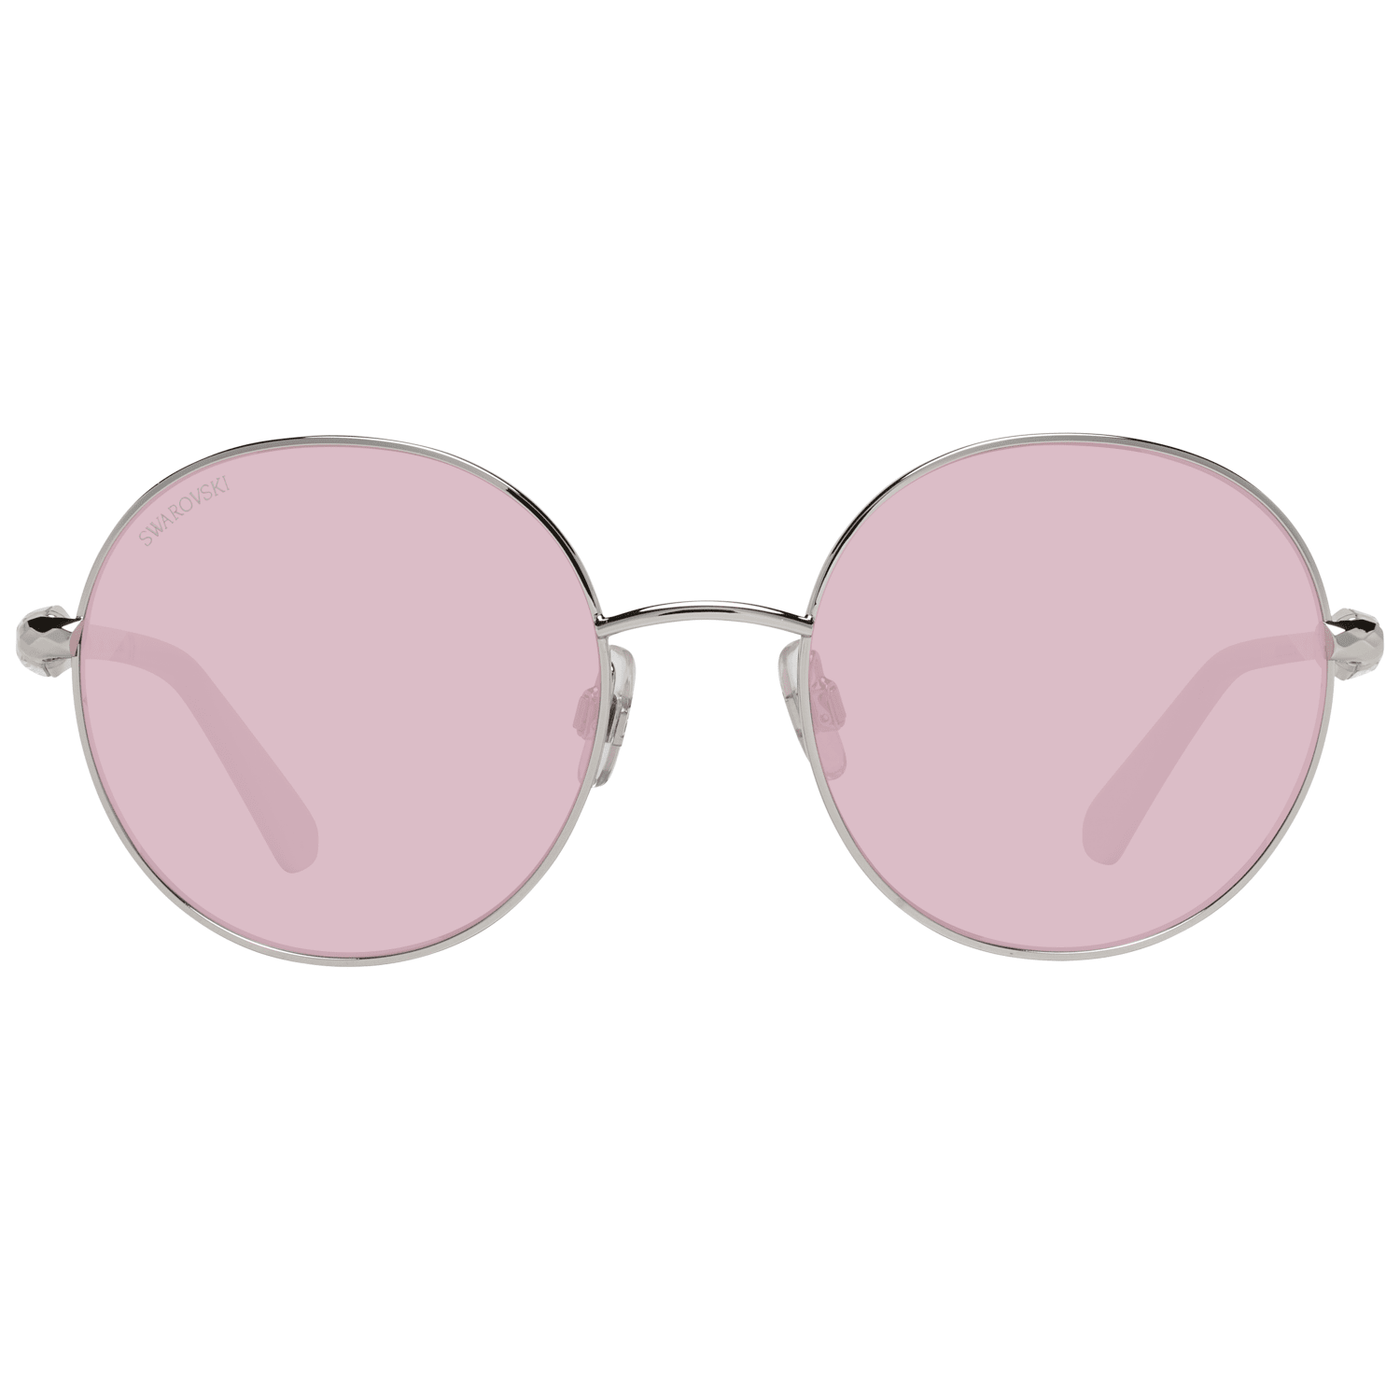 Swarovski Silver  Sunglasses